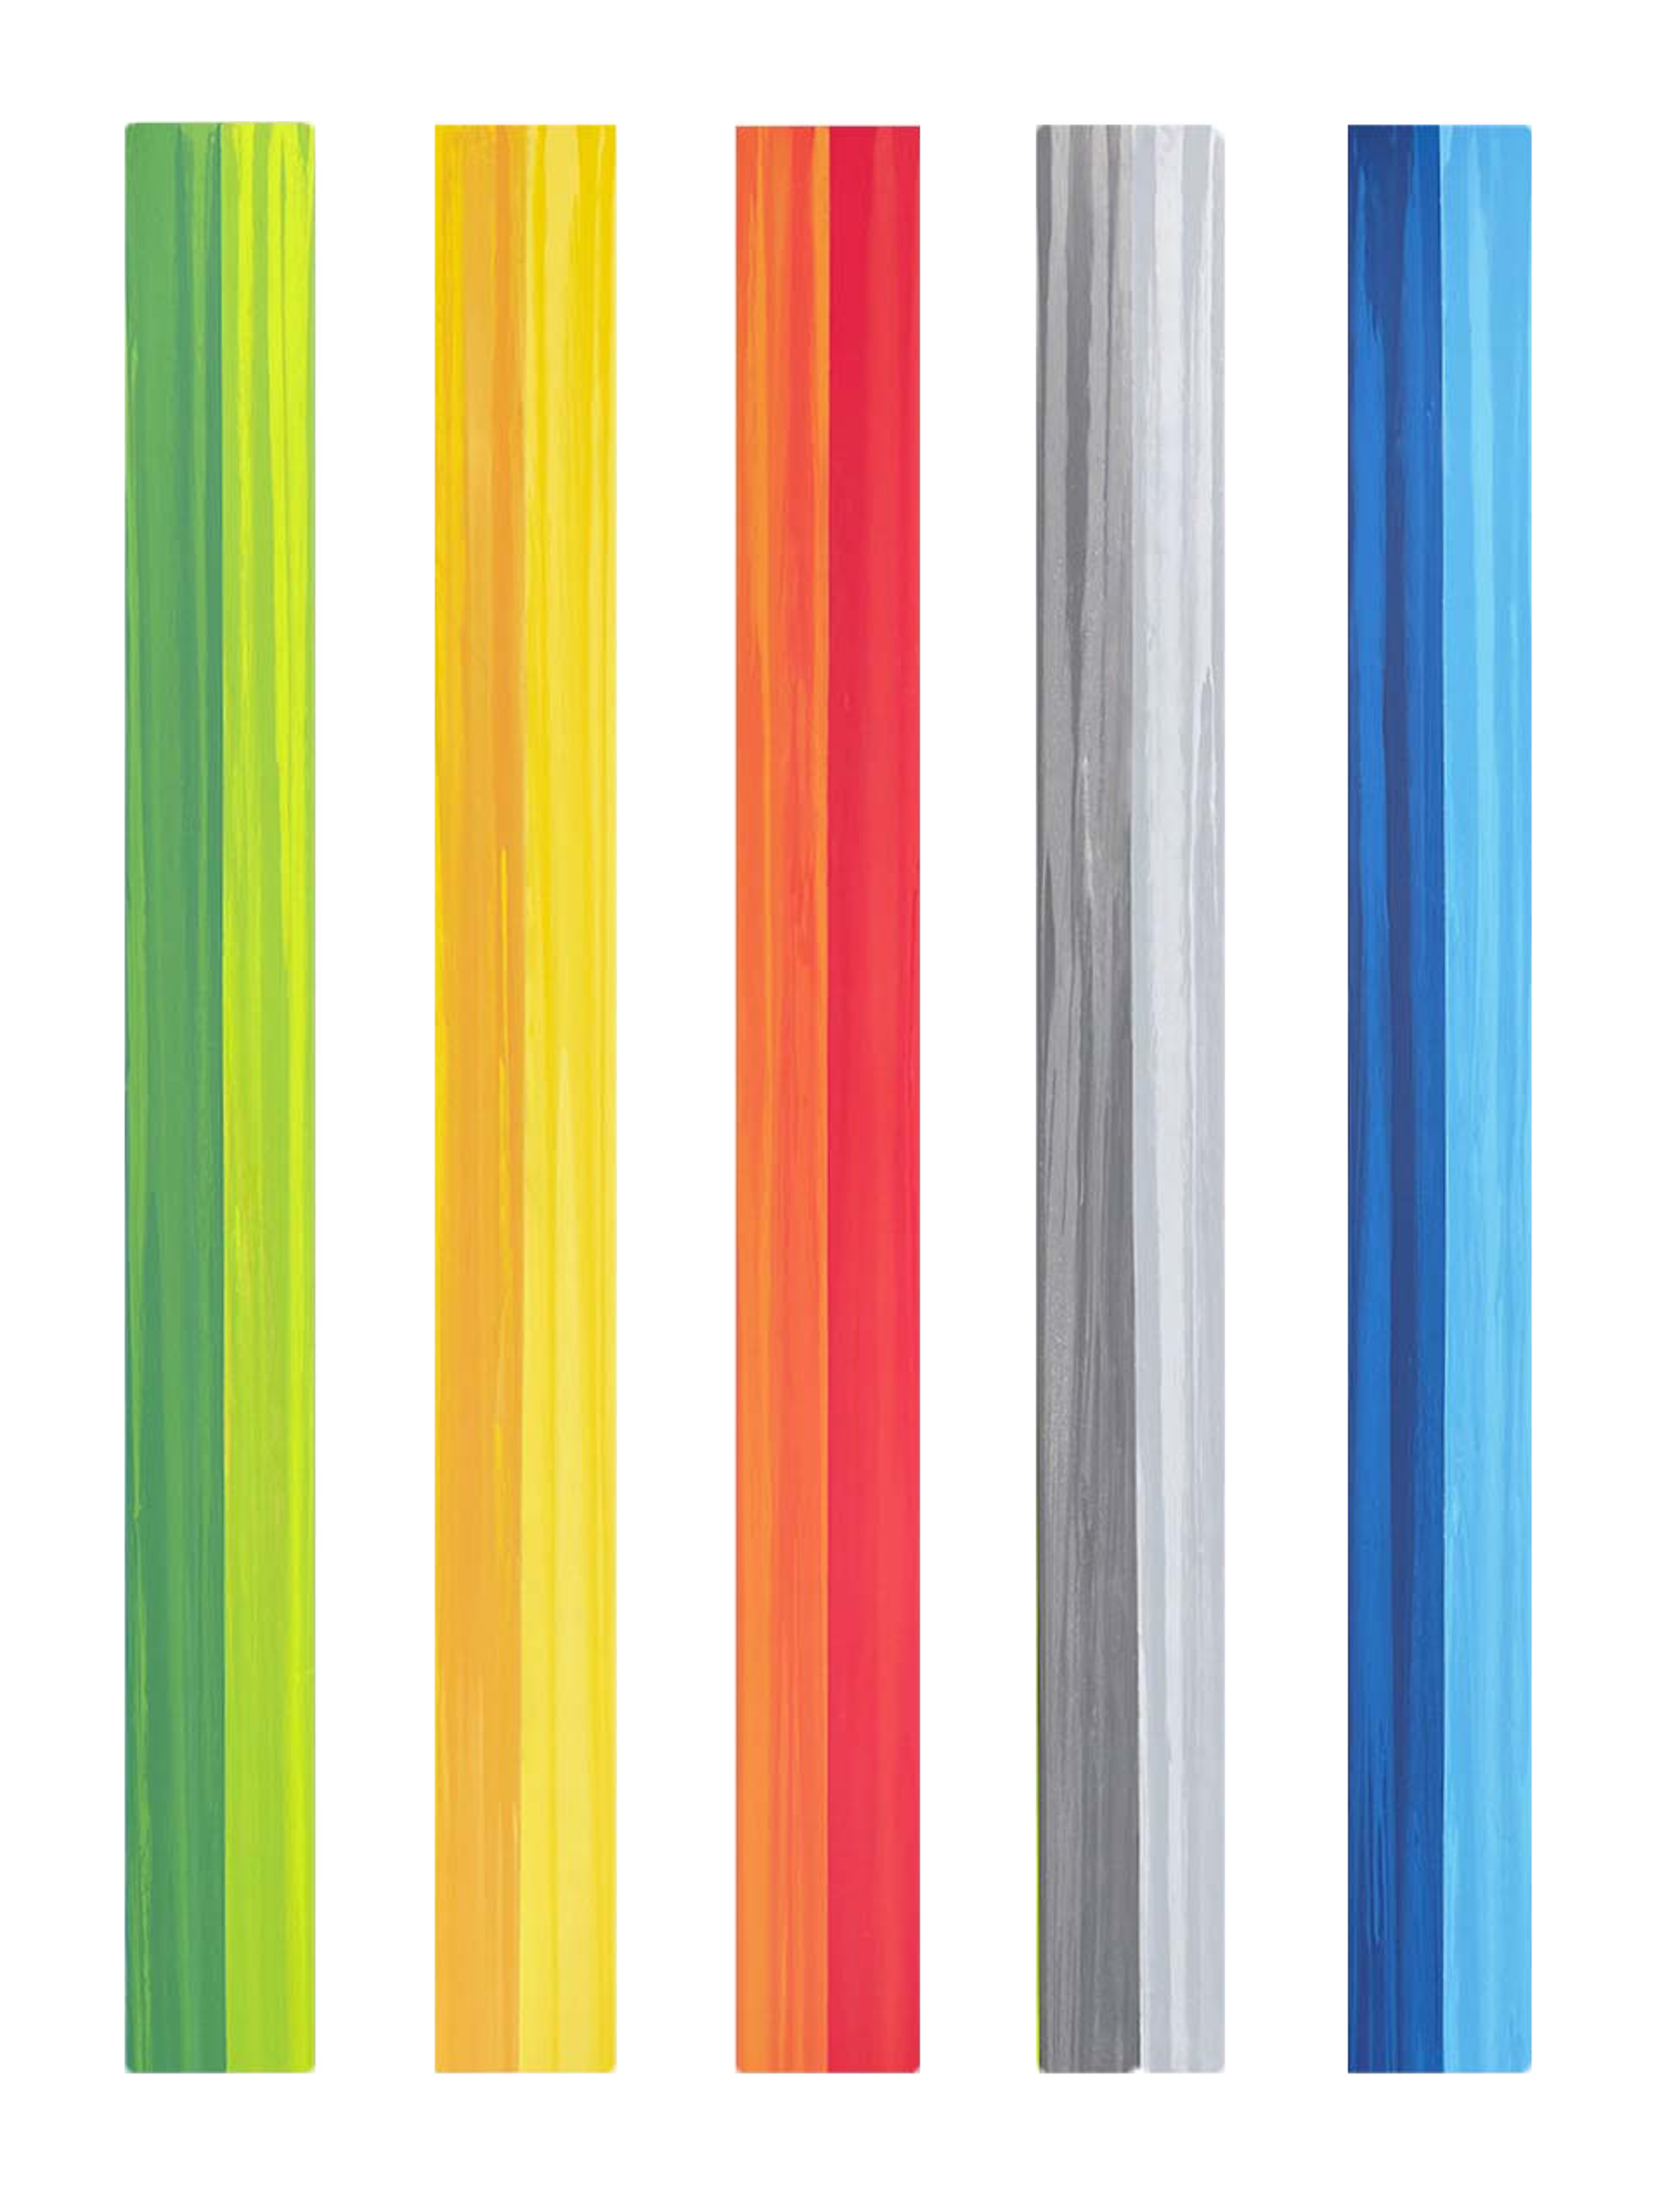 EQ in Color Series 22 by Andrzej Karwacki